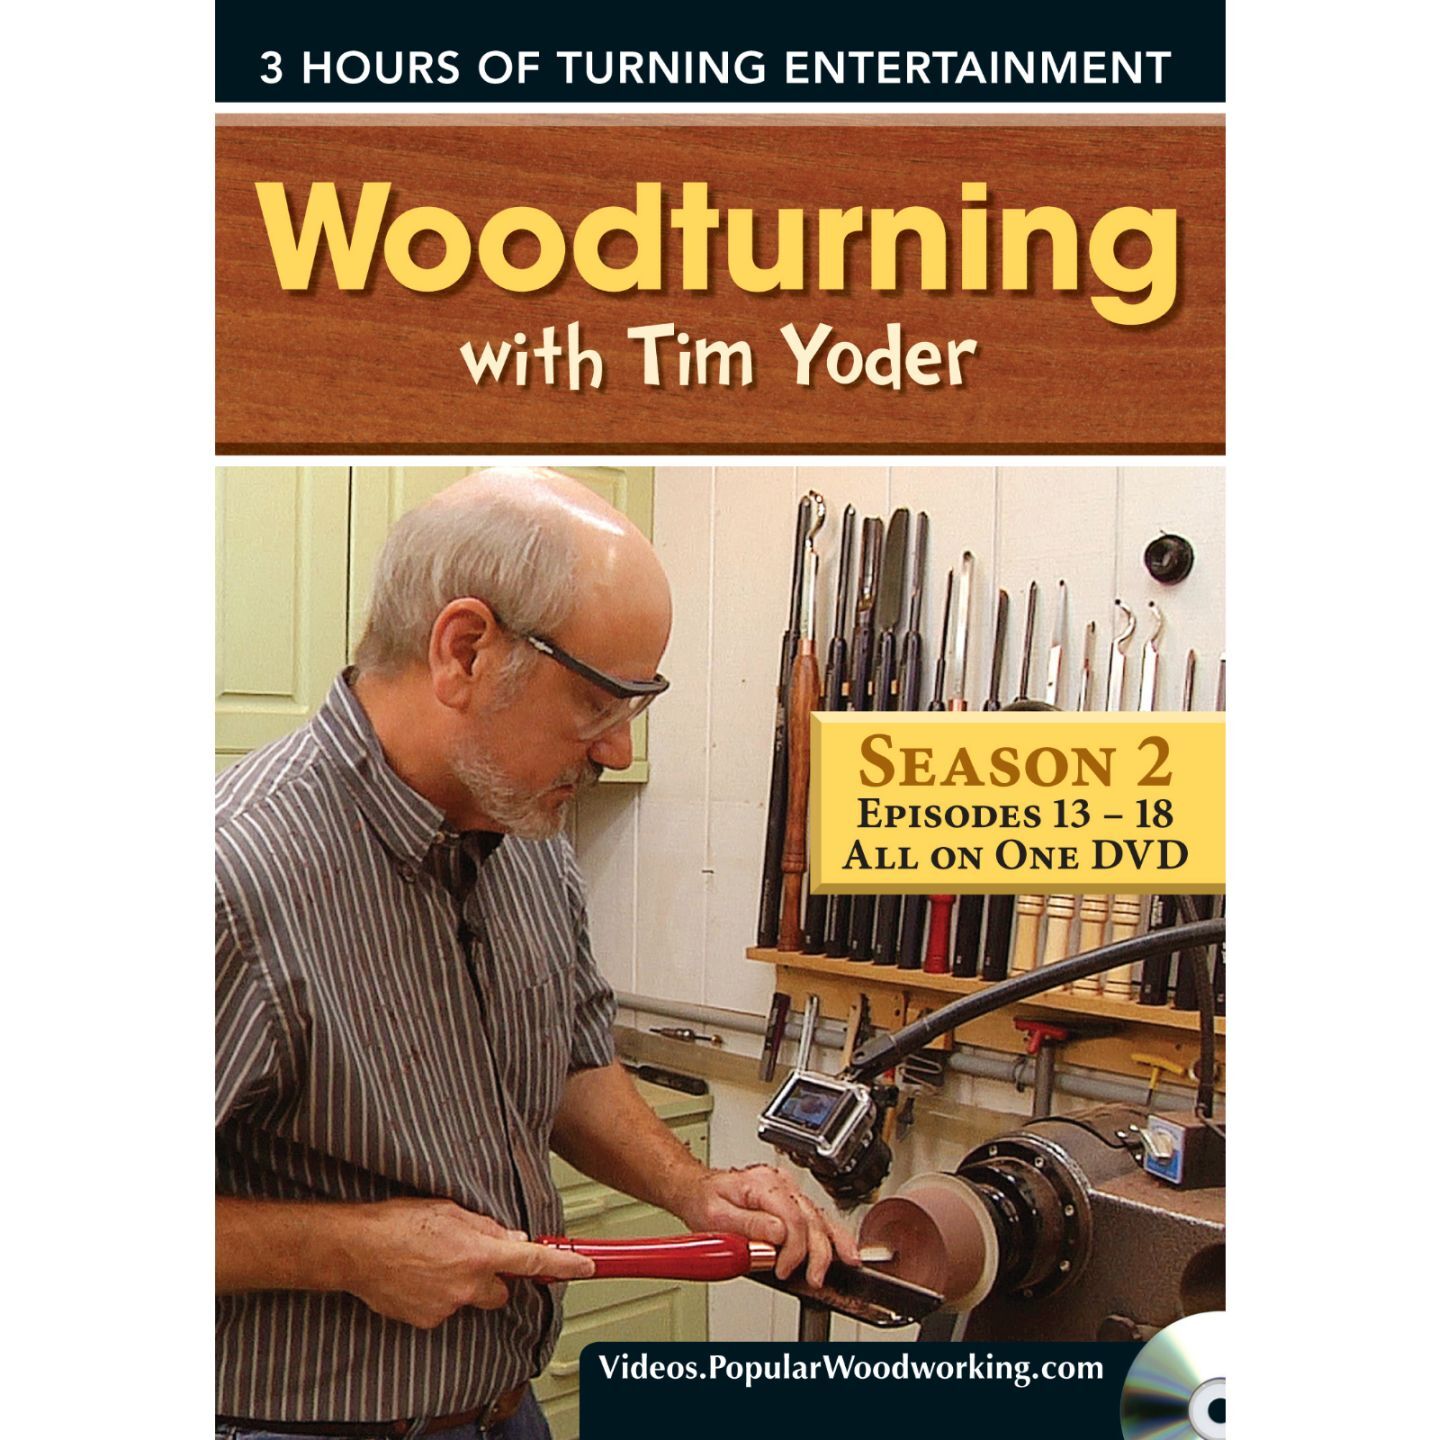 Woodturning with Tim Yoder: Season 2 Episodes 13-18 (DVD)